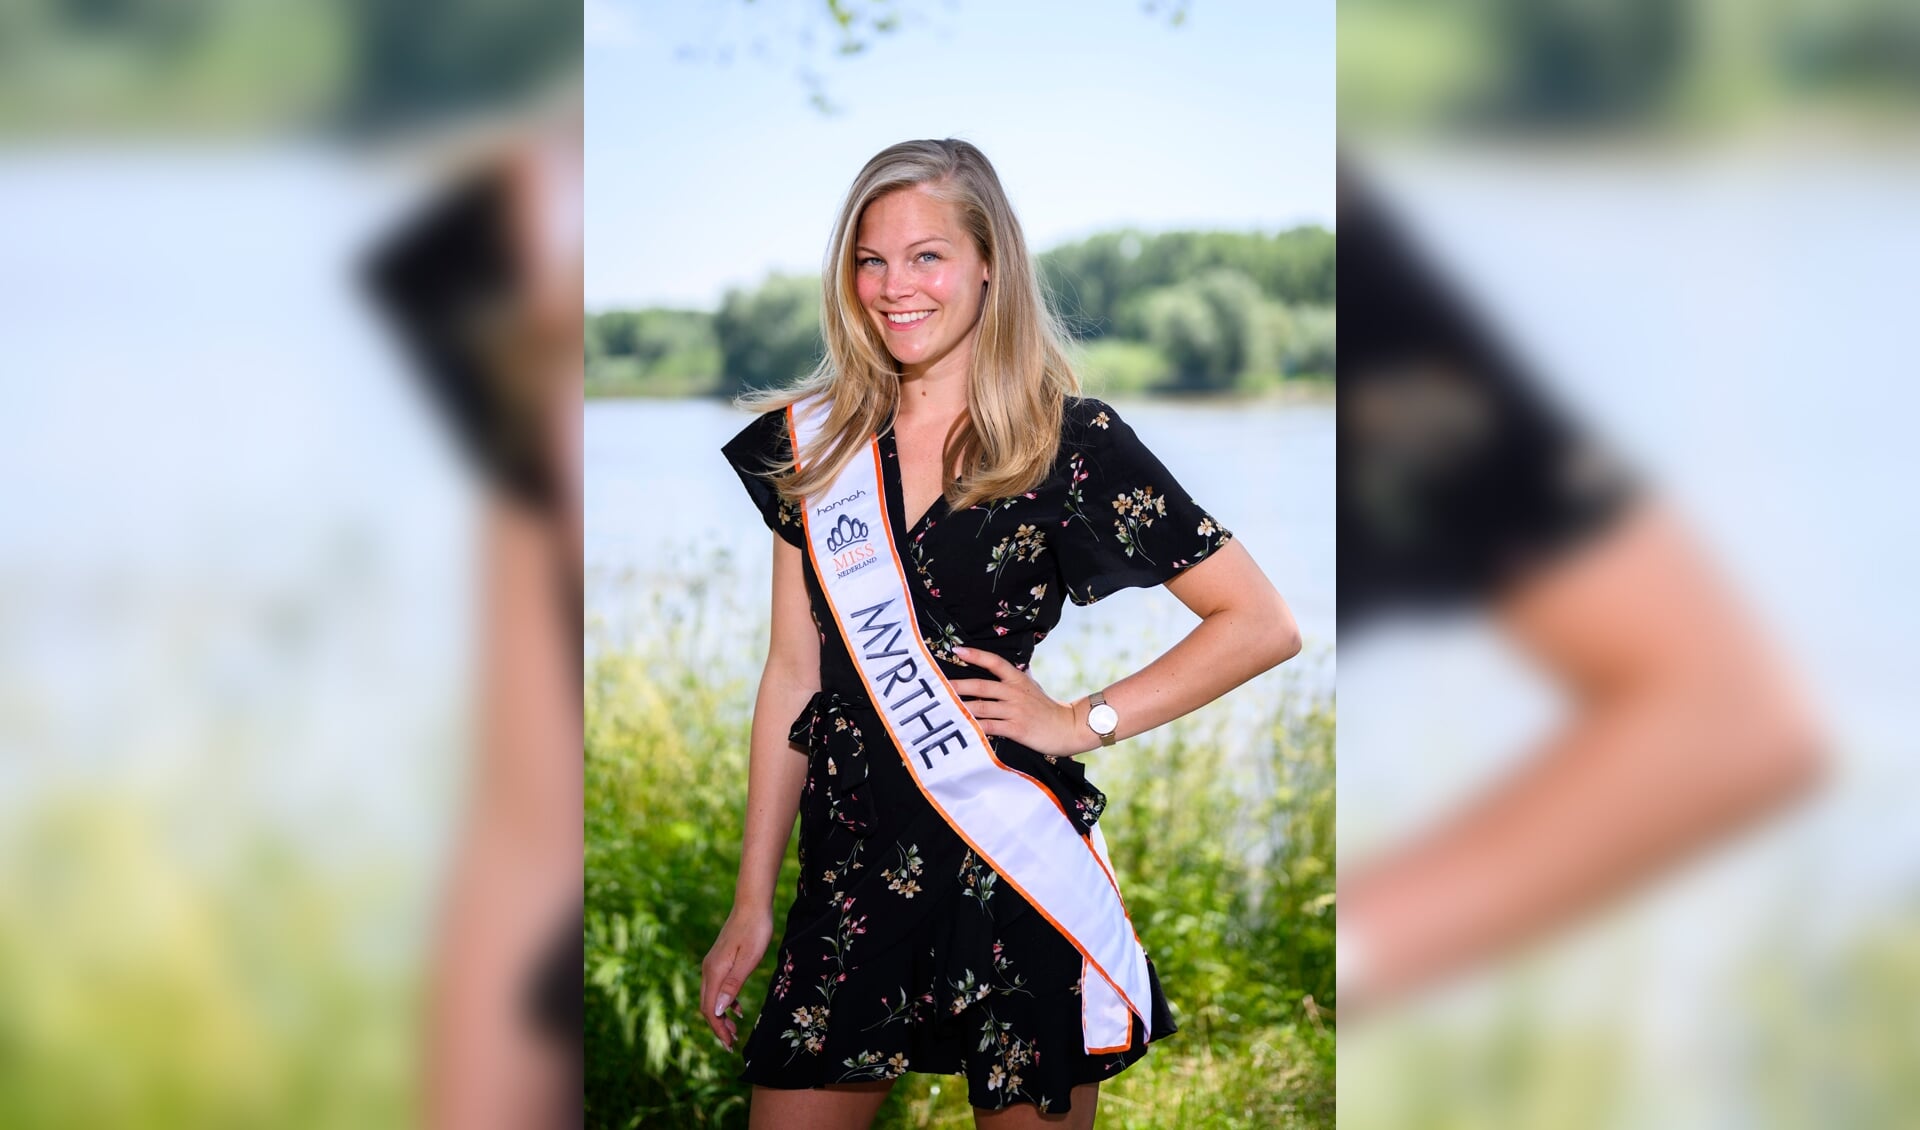 Myrthe is met negen andere meiden in de race om Miss Nederland te worden.